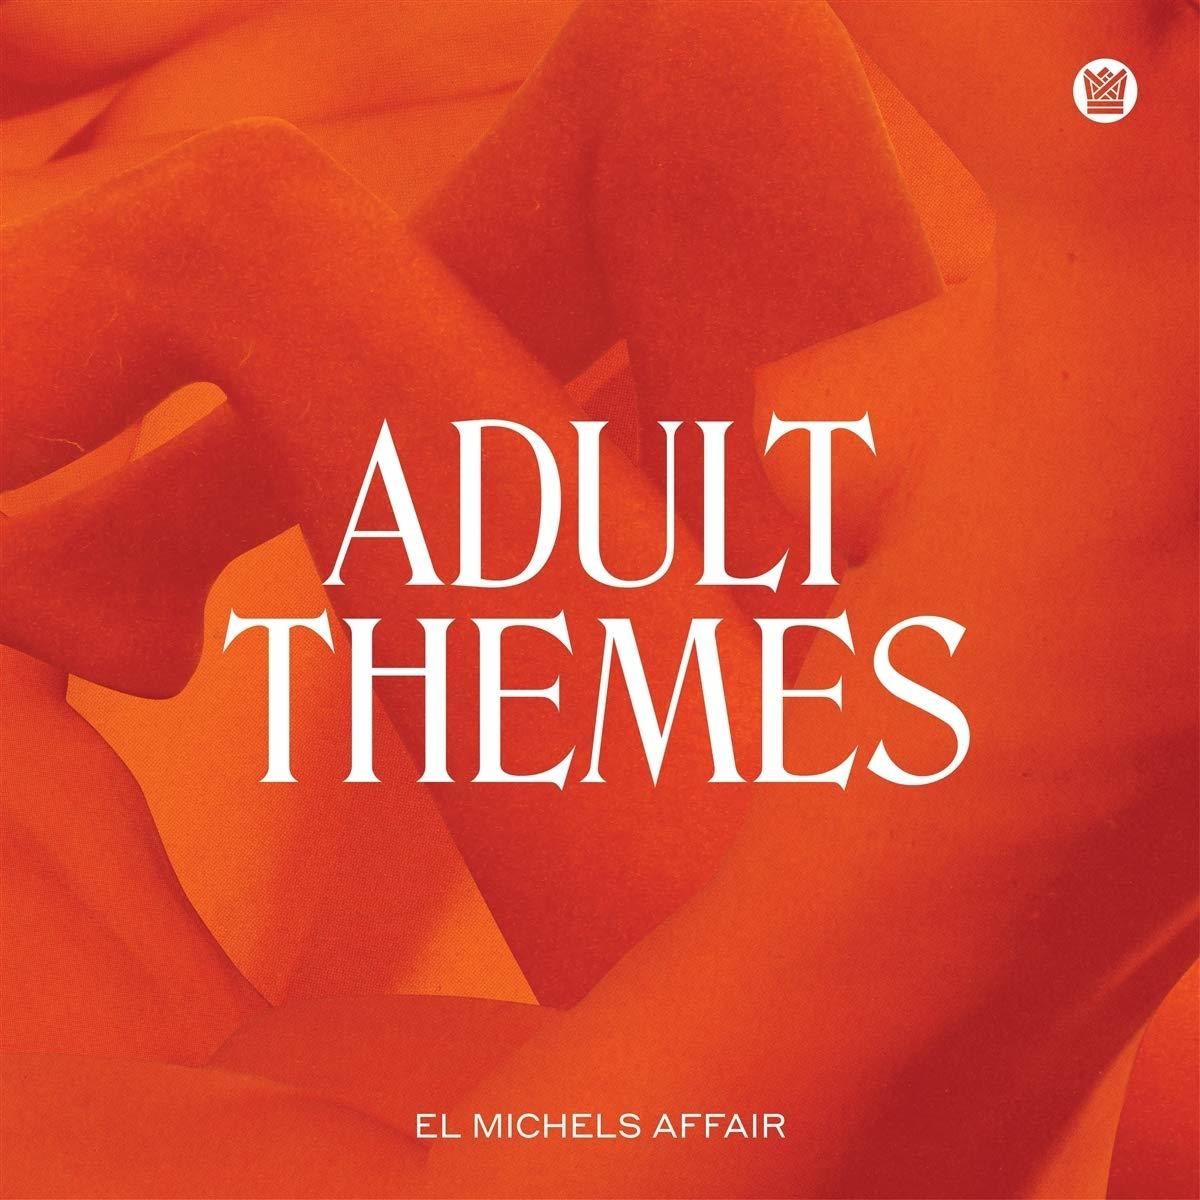 El Michels Affair Themes (CD) - Adult 